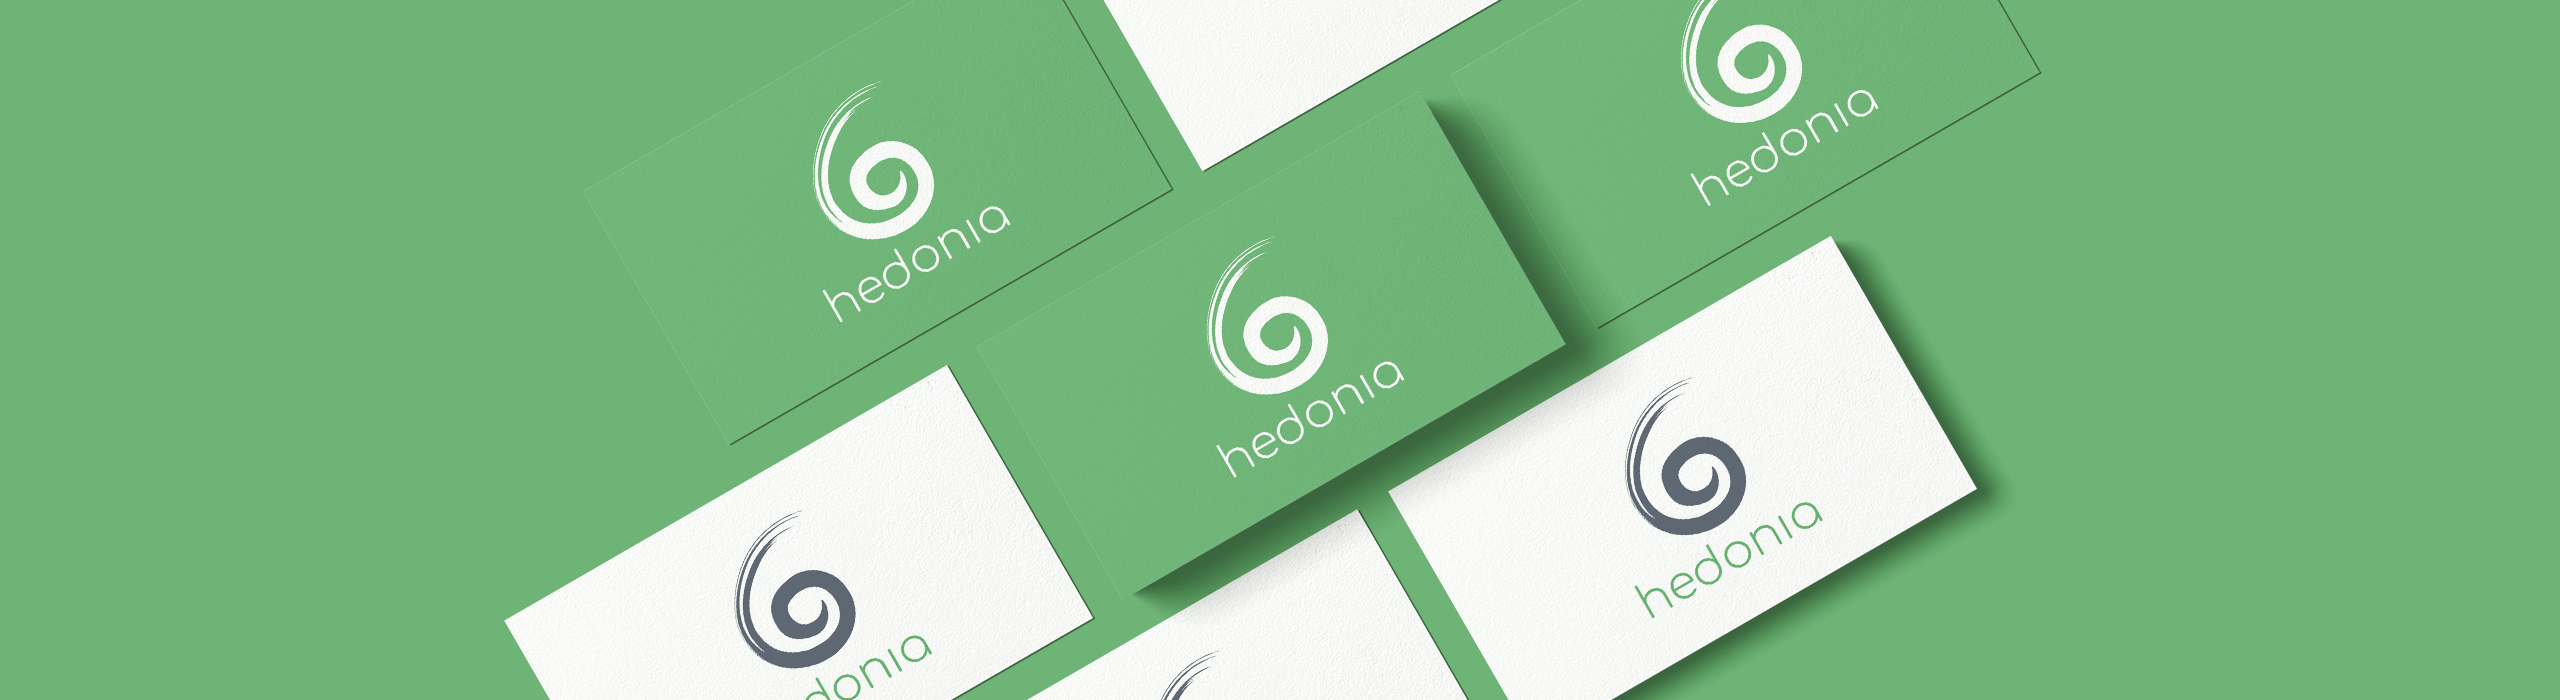 Hedonia - 3 - Natie Branding Agency